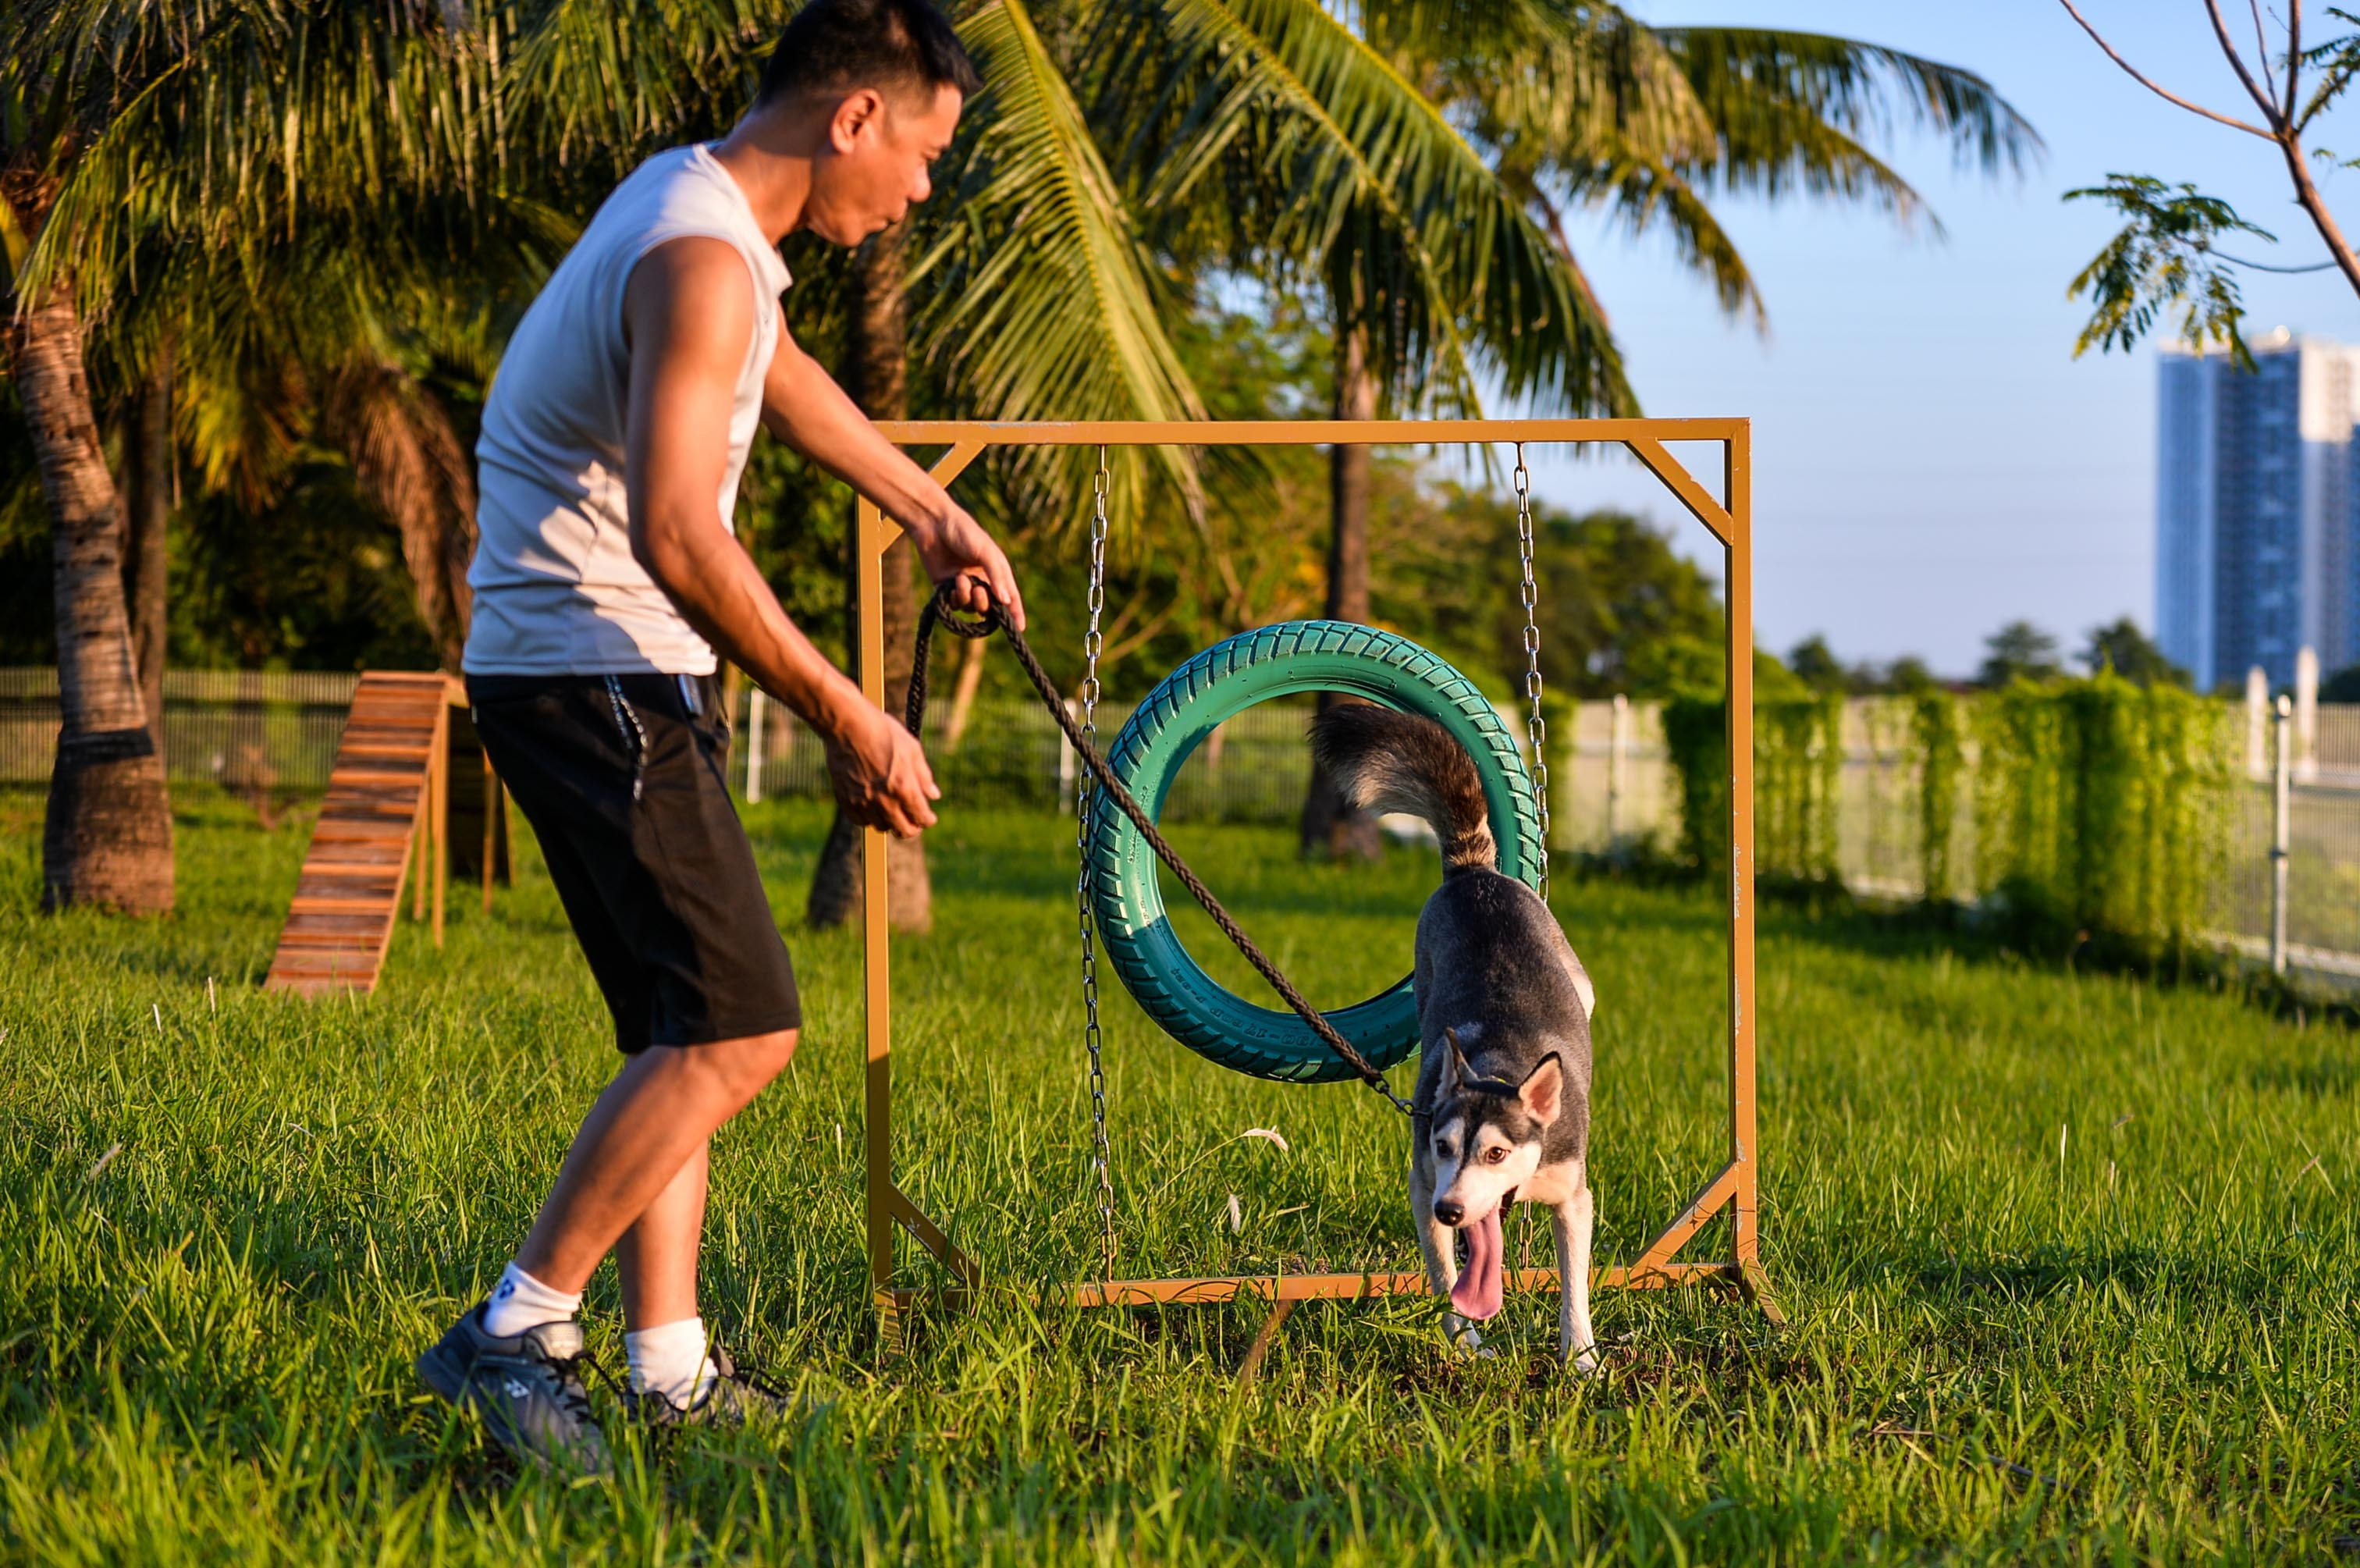 Những dụng cụ làm đồ chơi cho thú cưng được thiết kế đơn giản như lốp xe cũ được sơn lại, hay những ván gỗ dựng thành cầu thăng bằng.